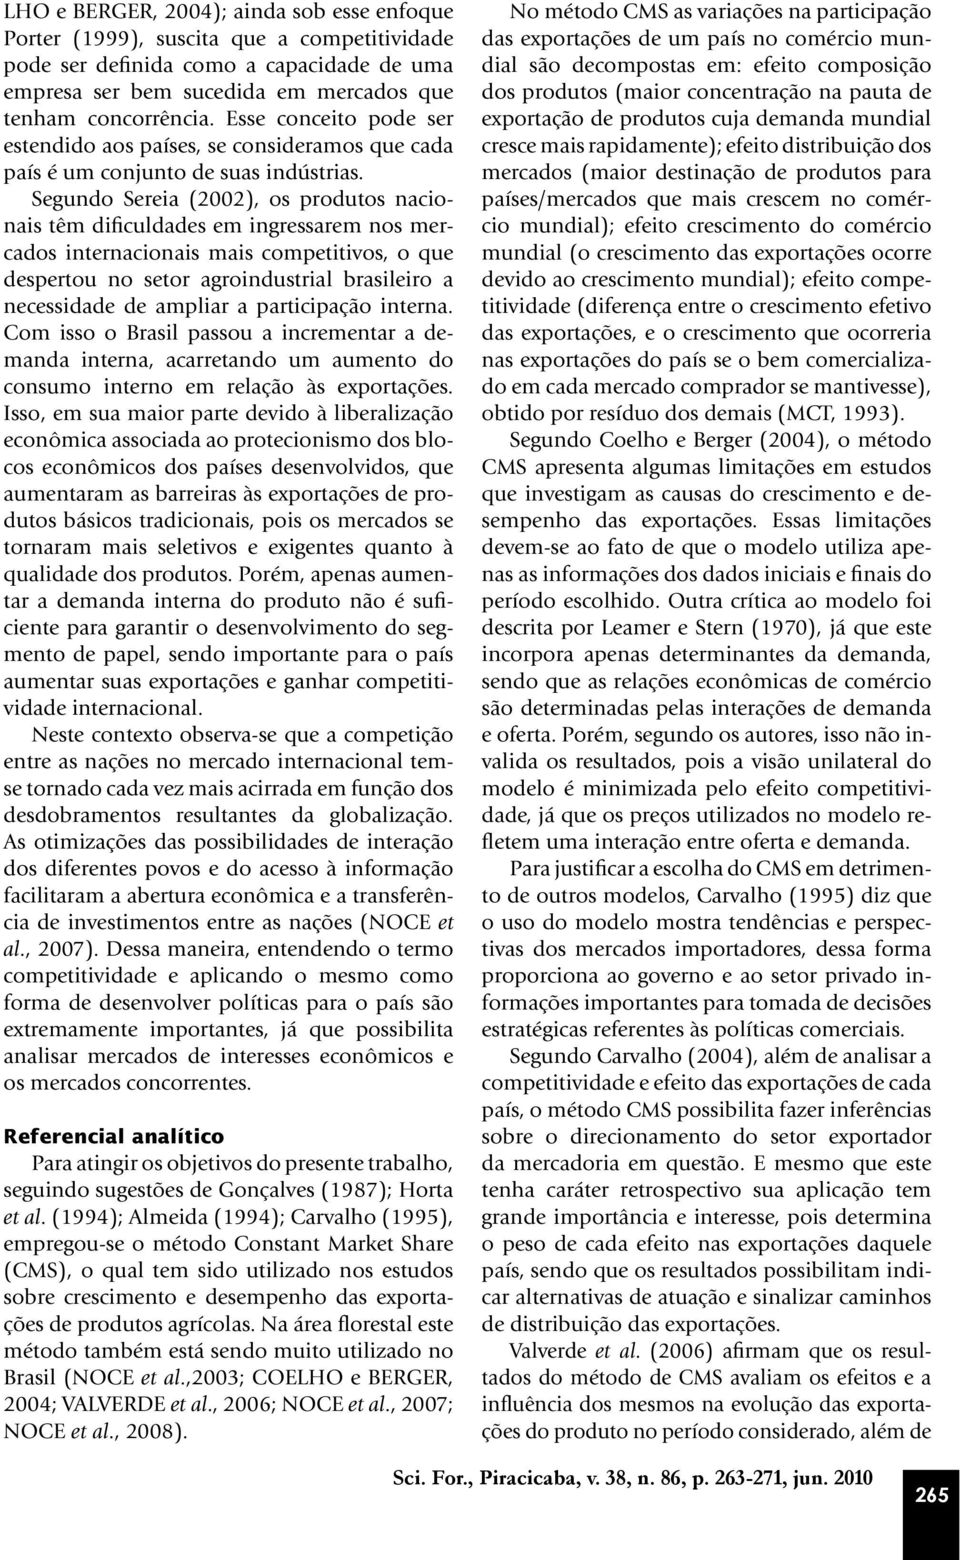 Segundo Sereia (2002), os produtos nacionais têm dificuldades em ingressarem nos mercados internacionais mais competitivos, o que despertou no setor agroindustrial brasileiro a necessidade de ampliar